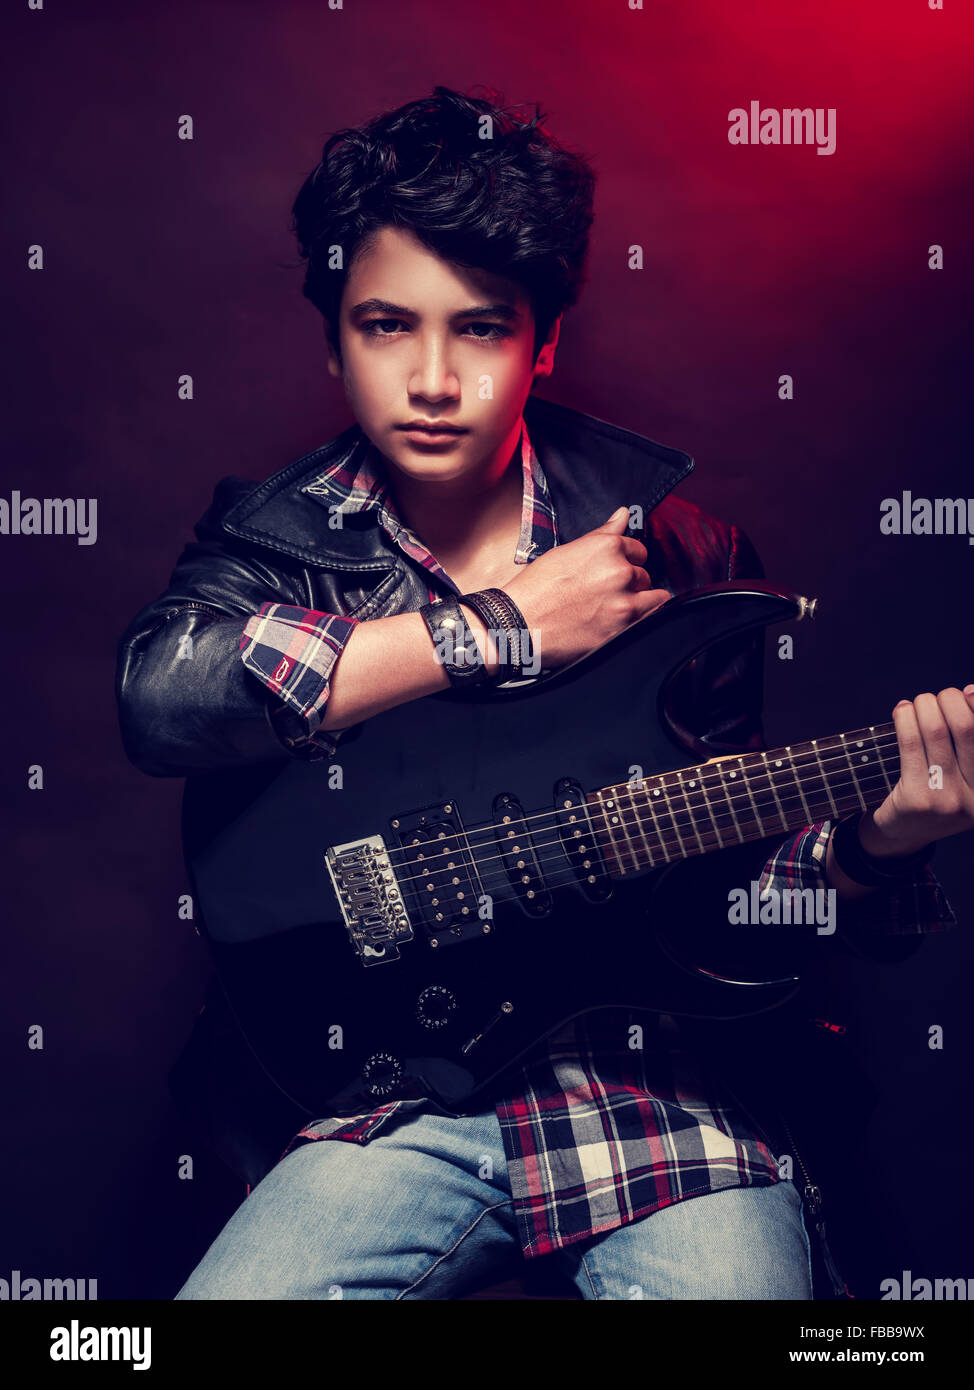 Sérieux talent teen boy avec guitare sur fond rouge sombre, jouant sur l'instrument de musique, de vie heureuse Banque D'Images